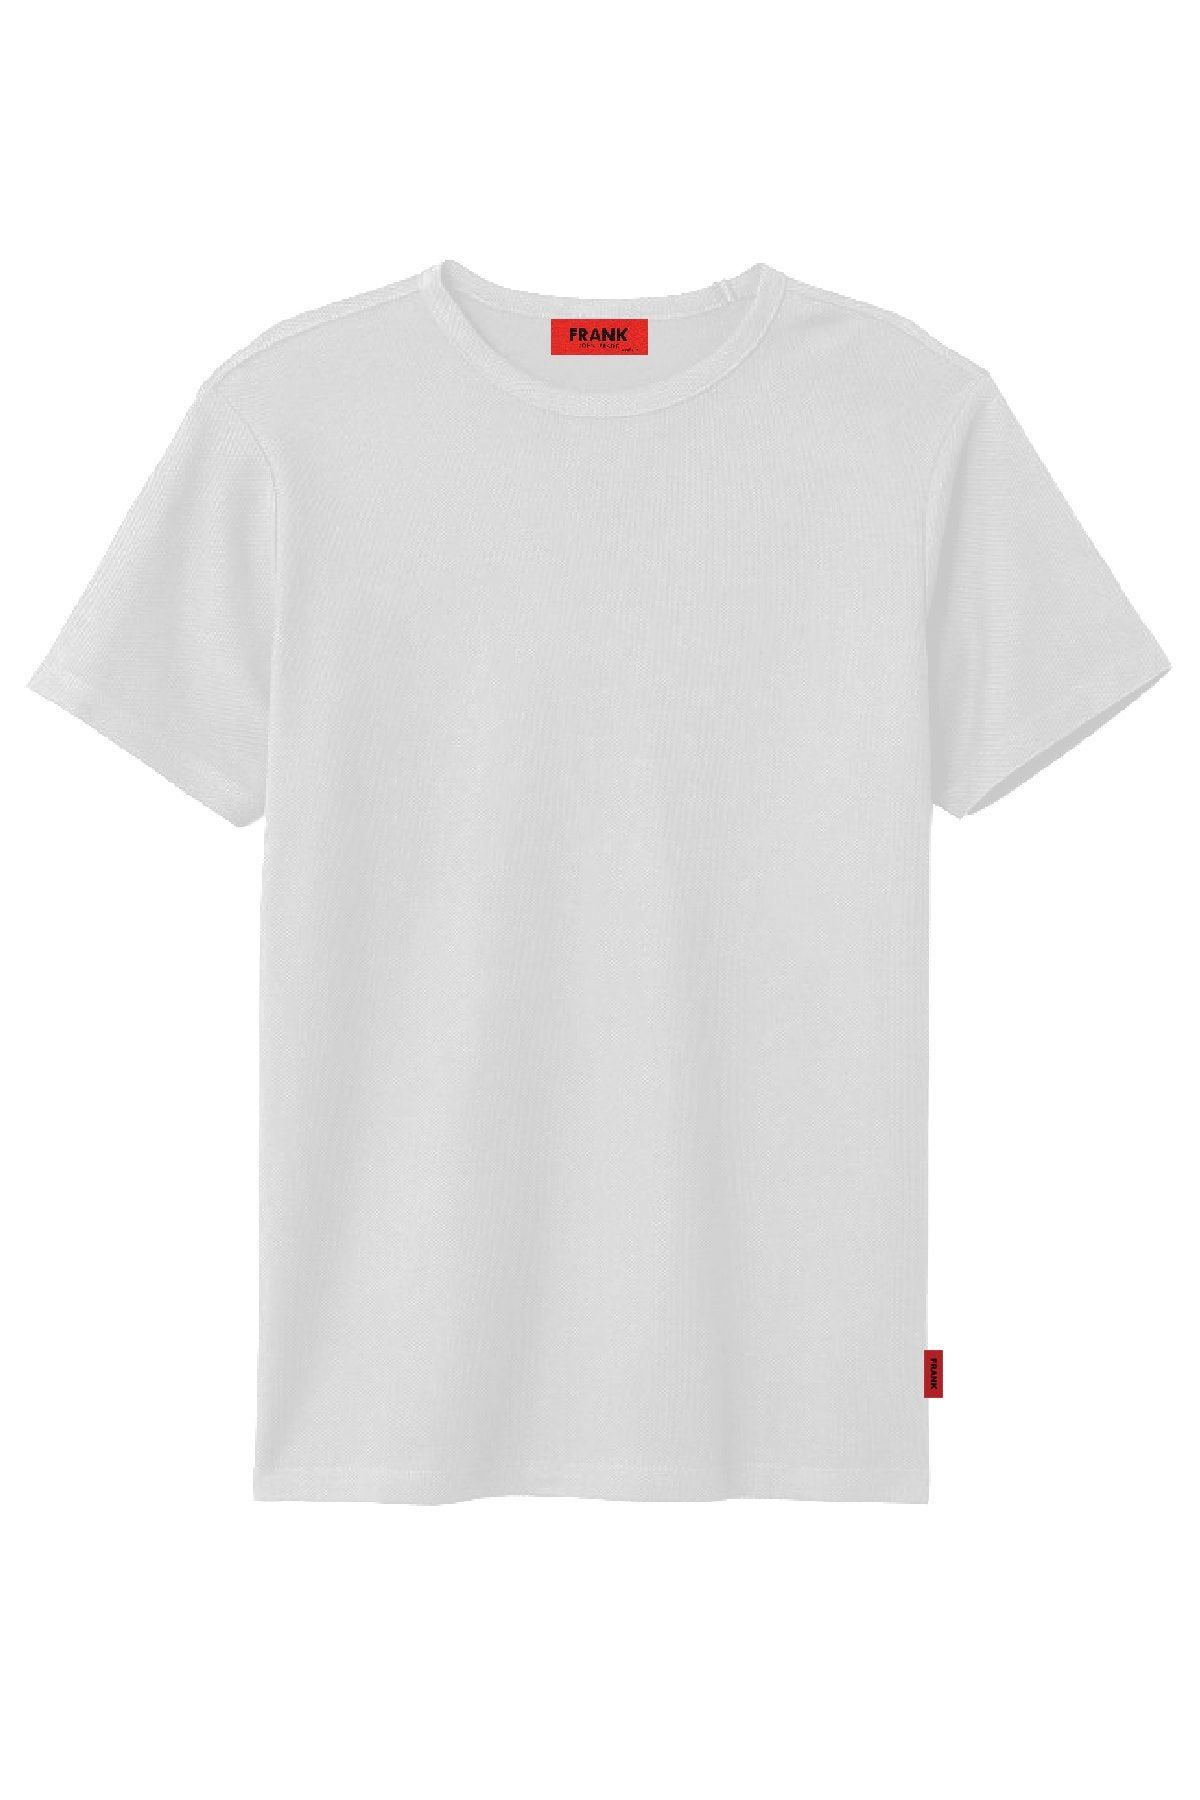 John Frank Erkek Beyaz Basic Pike T-shirt